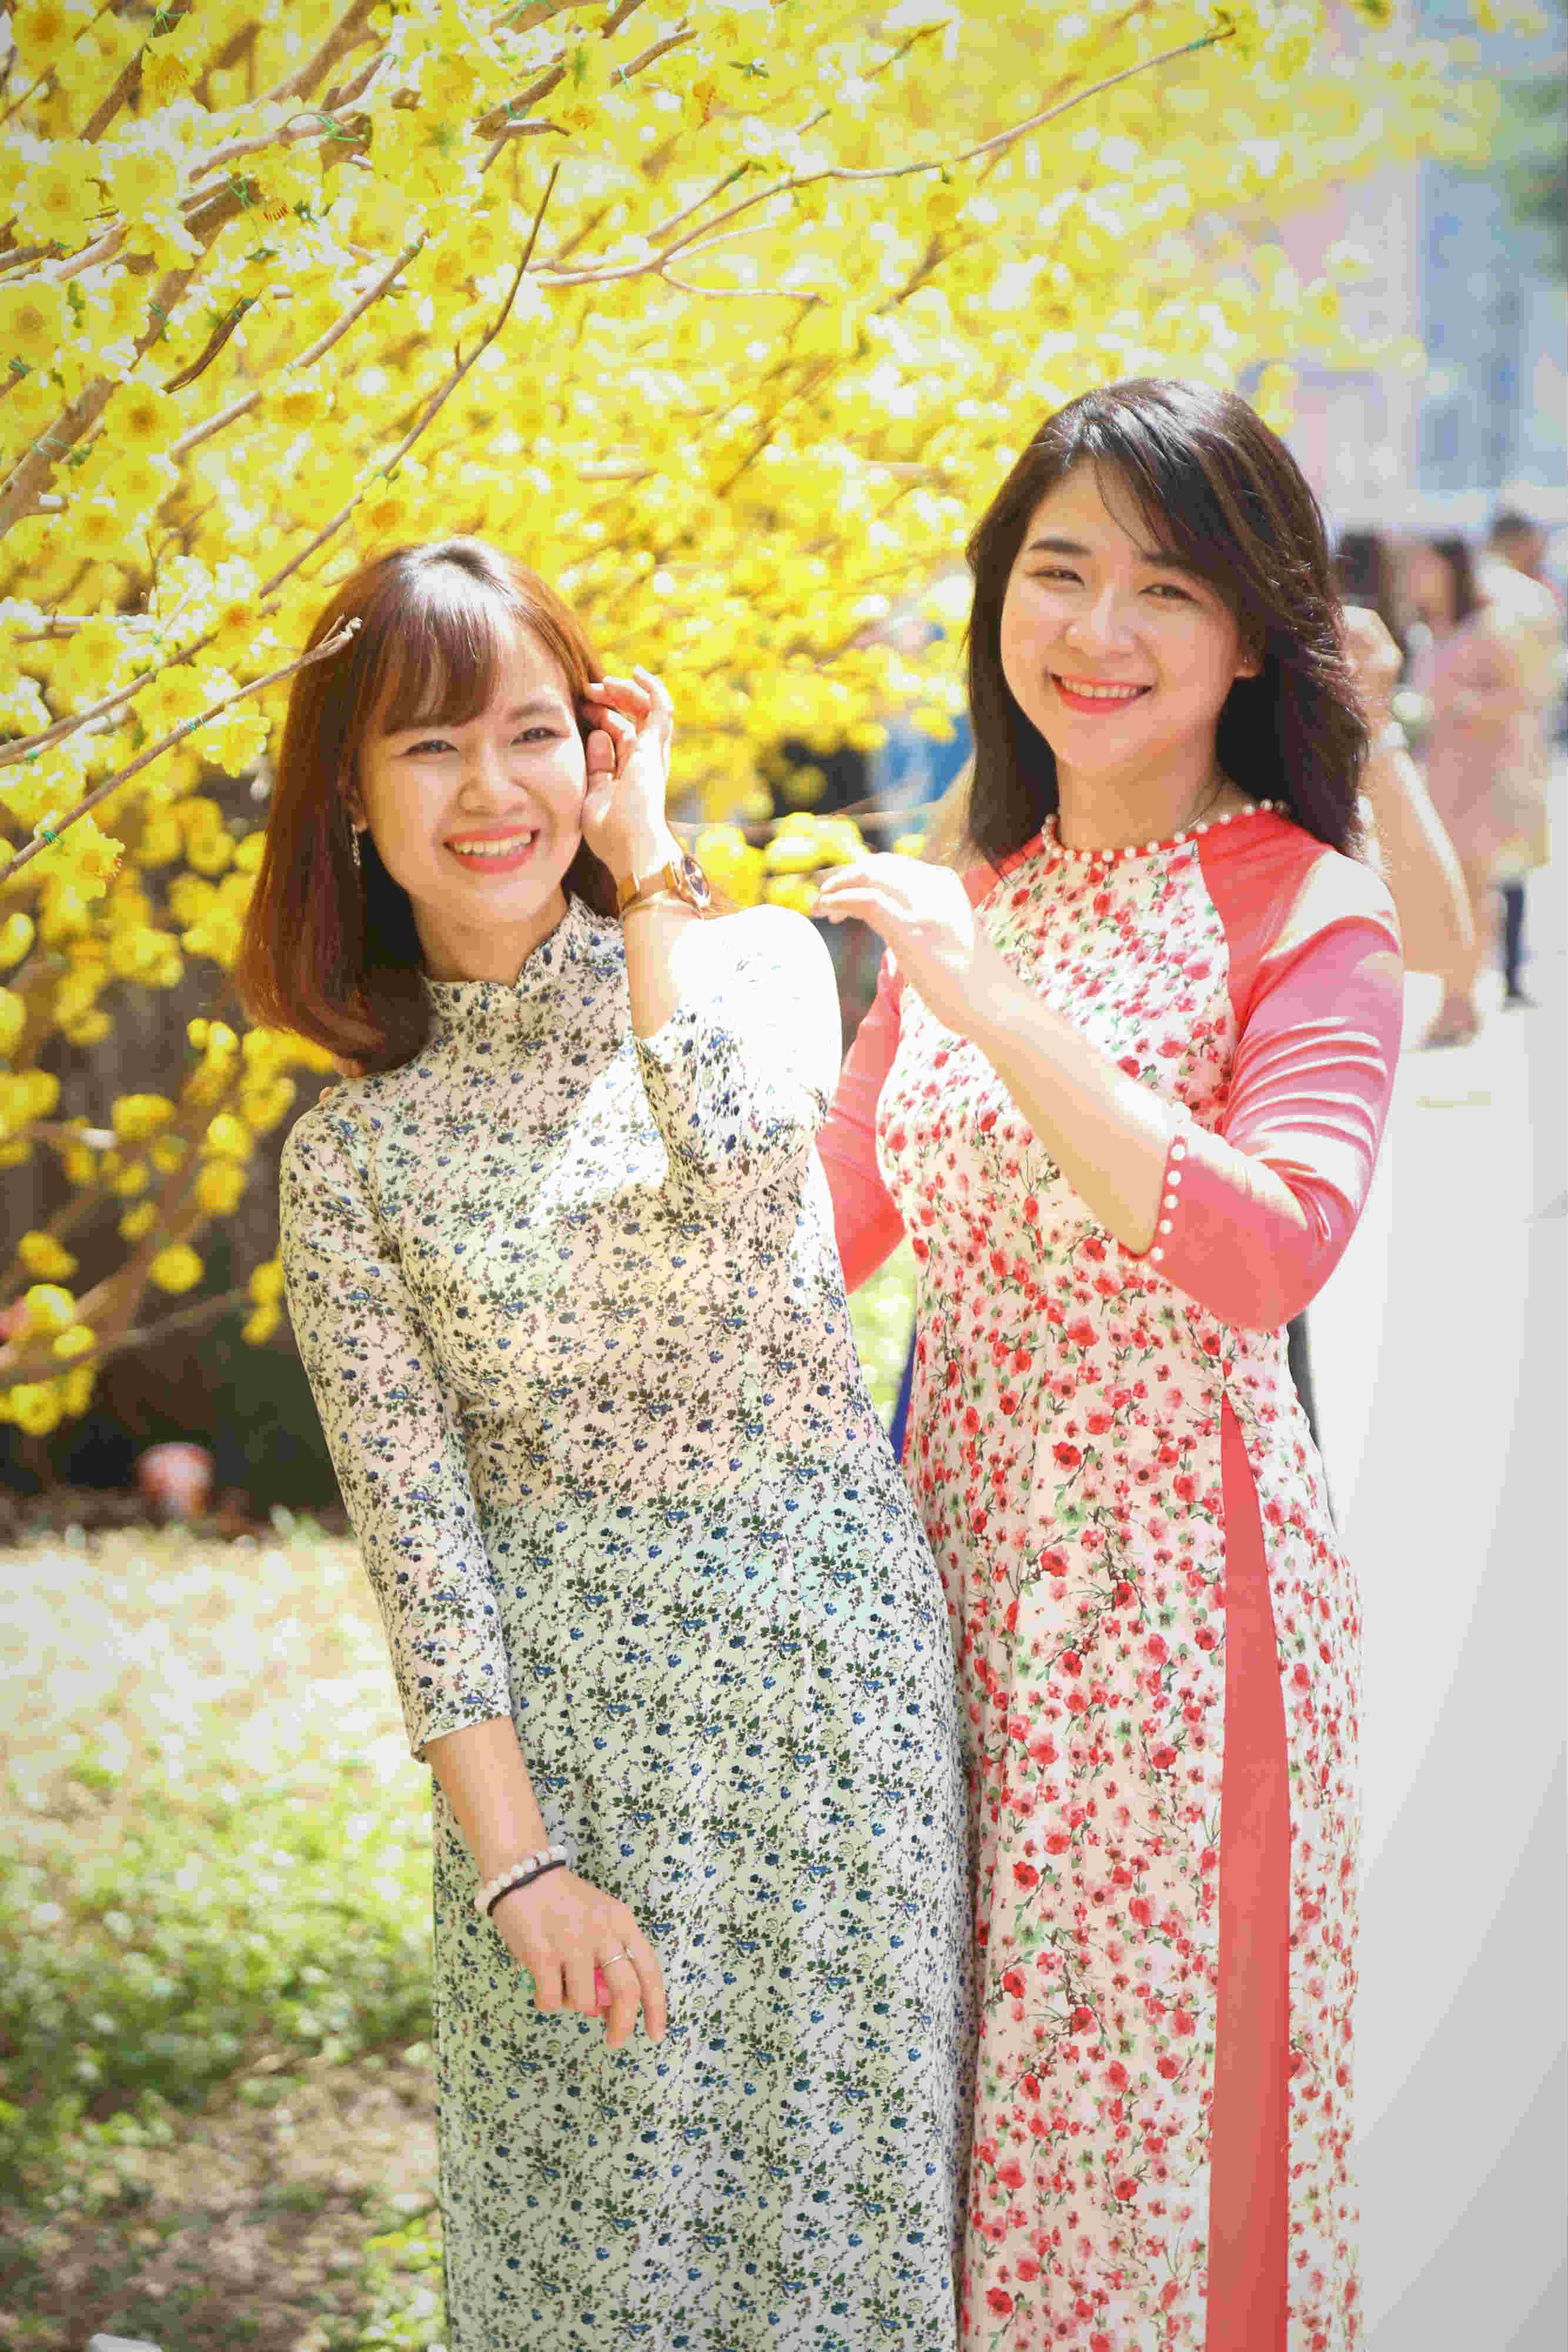 Áo dài là trang phục được giới trẻ Sài Gòn lựa chọn nhiều nhất để xuống phố dạo bước ngắm hoa.